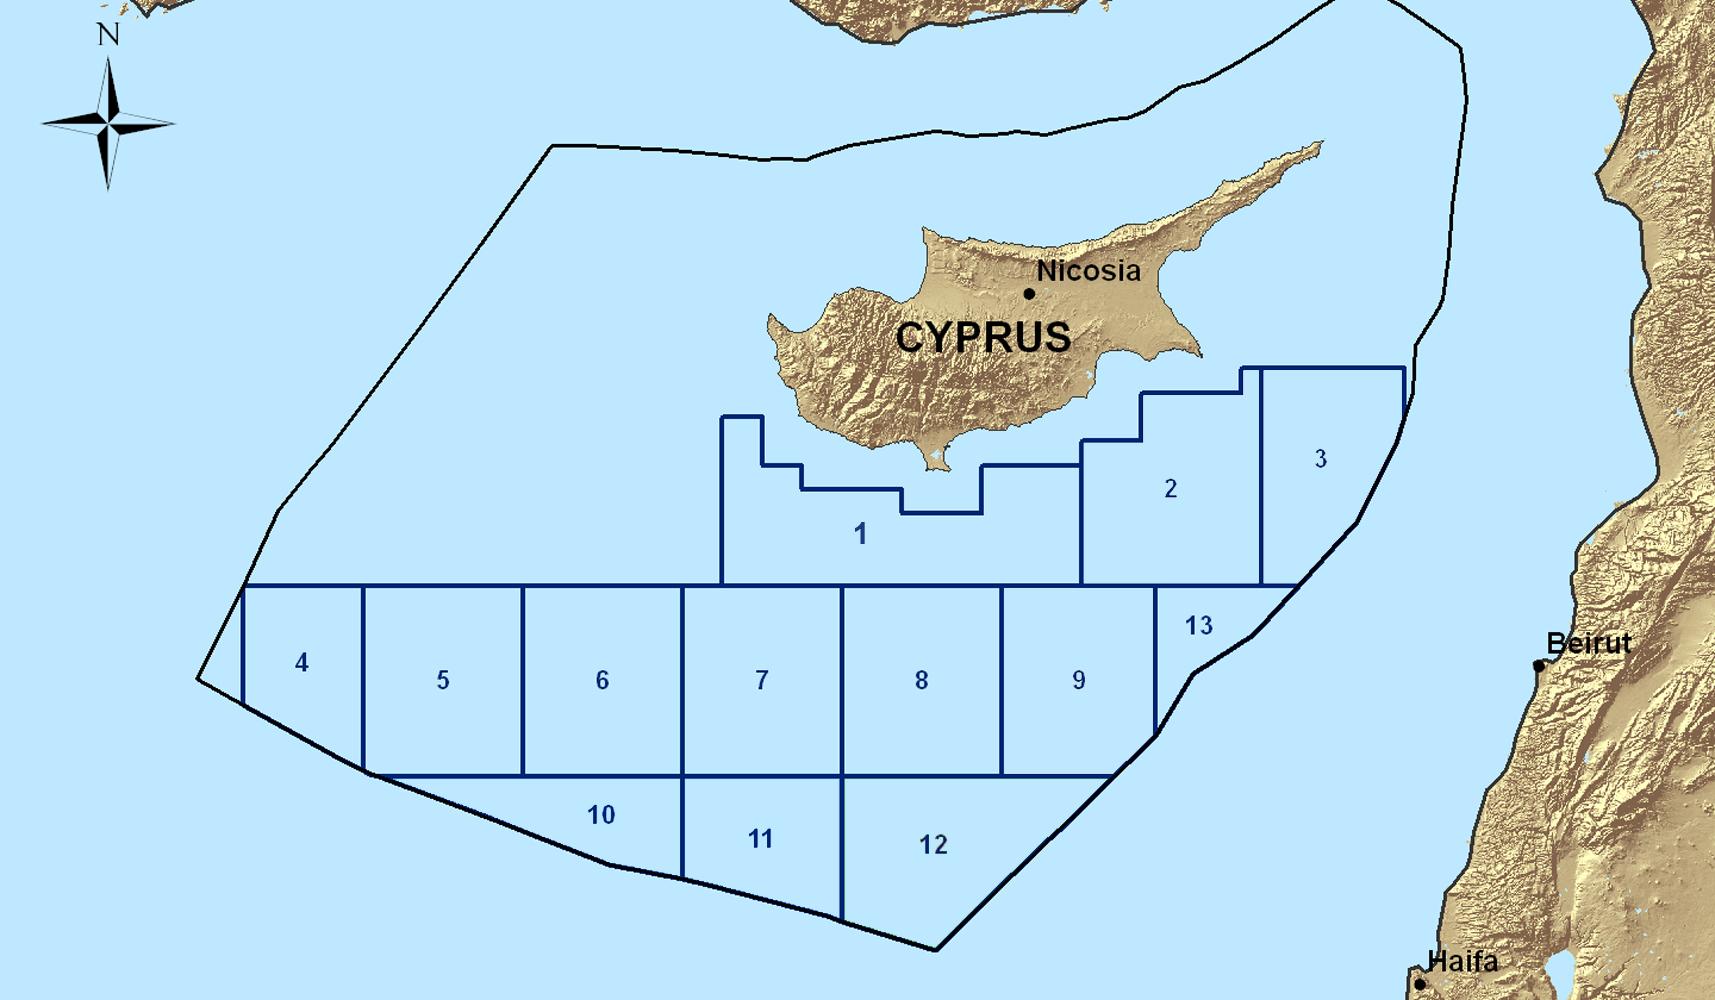 Ο κορωνοϊός αιτία για την καθυστέρηση των γεωτρήσεων της ExxonMobil στην κυπριακή ΑΟΖ;